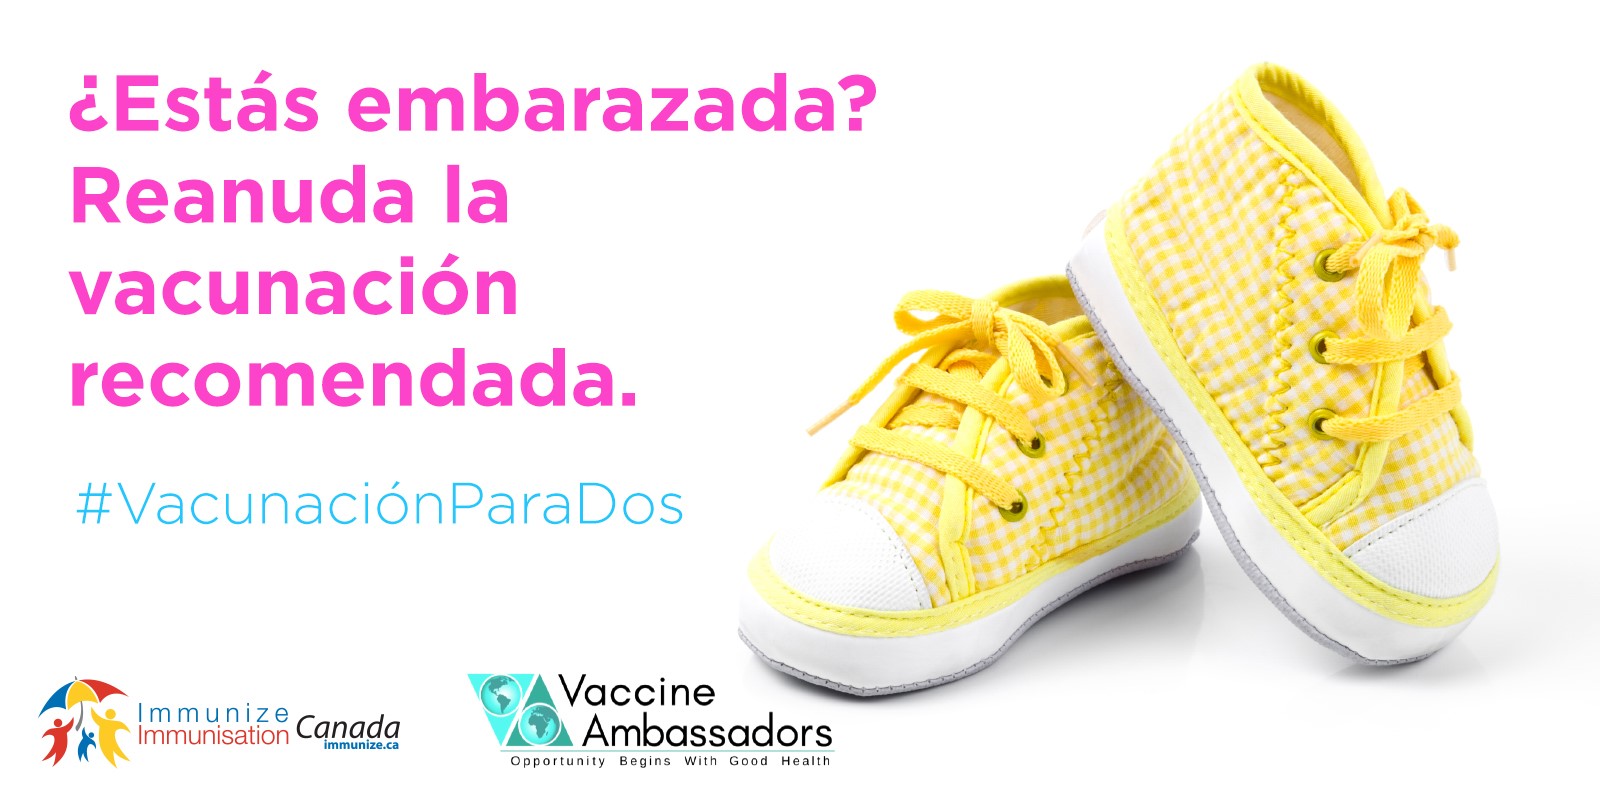 Vous attendez un bébé? Remettez-vous sur la bonne voie avec les vaccins recommandés - espagnol